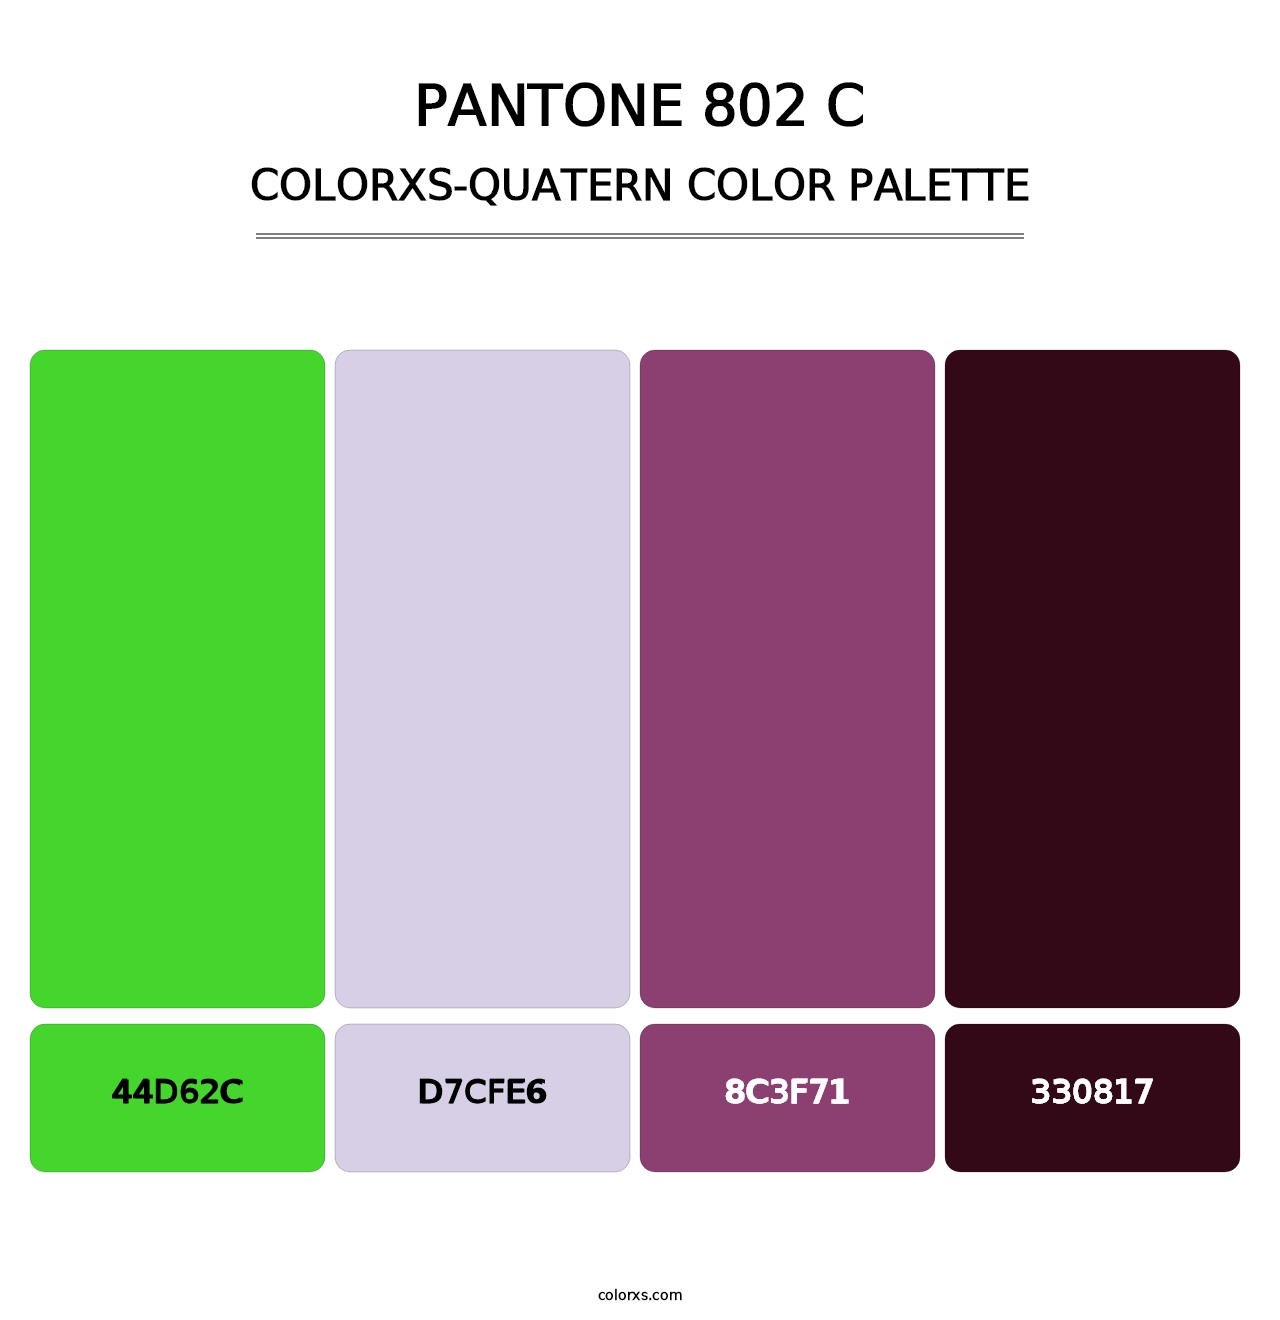 PANTONE 802 C - Colorxs Quatern Palette